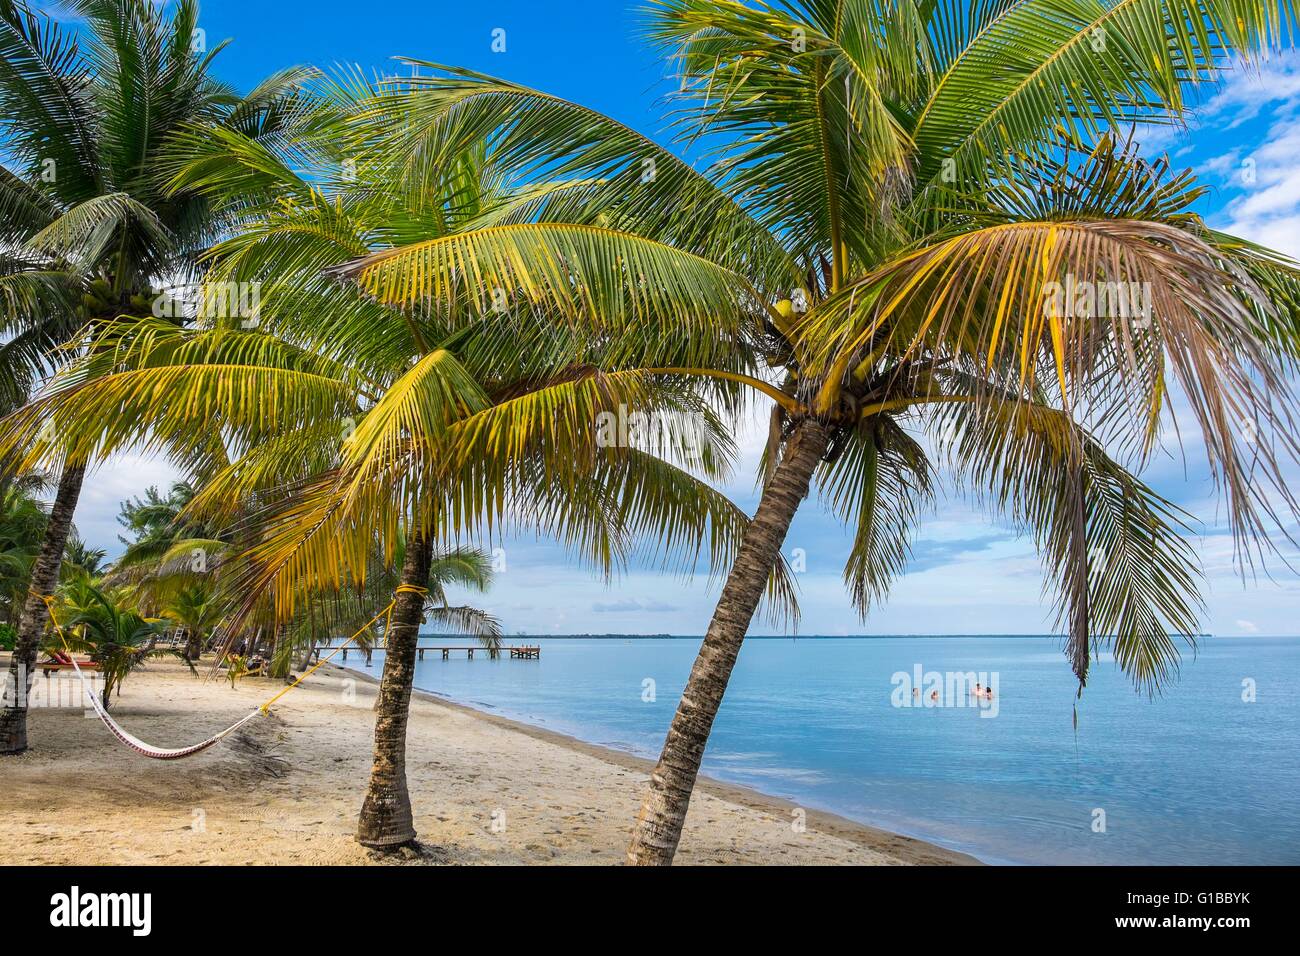 Belize, Stann Creek district, Hopkins, garifuna piccolo villaggio di pescatori e la spiaggia Foto Stock